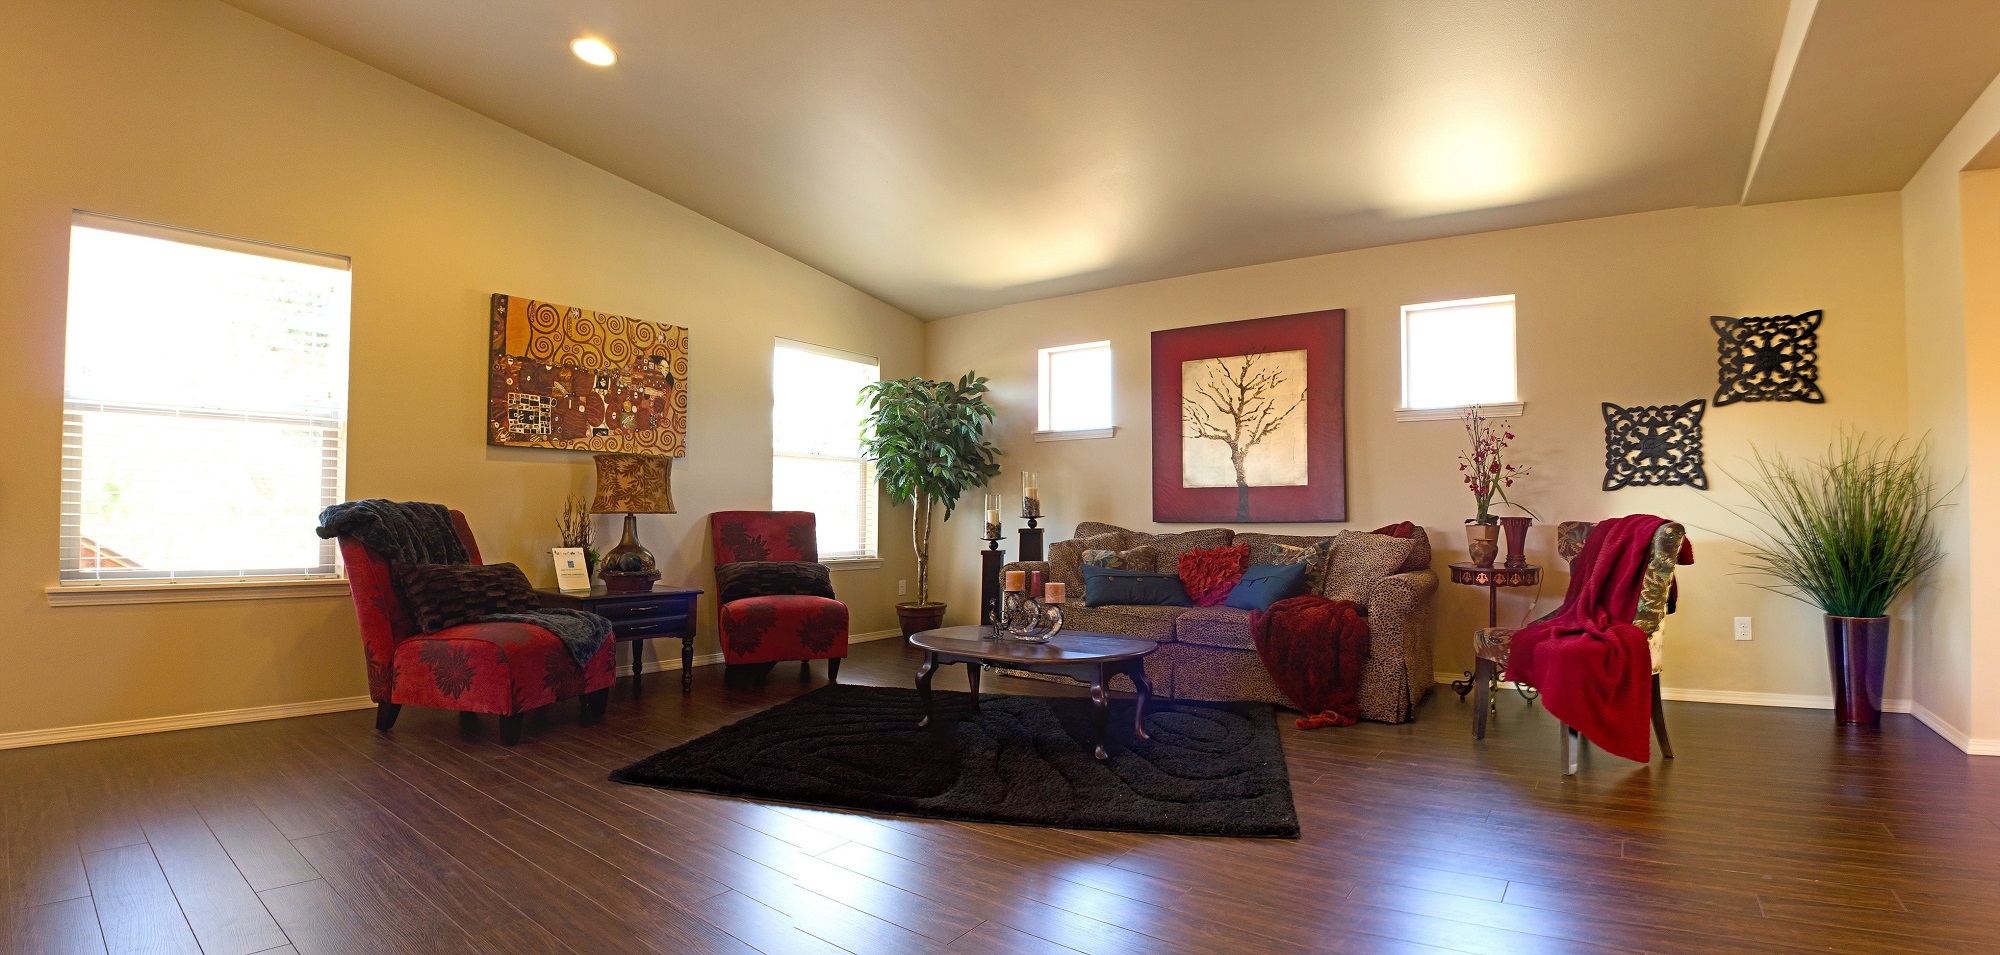 客厅木地板与豹纹沙发和红色口音